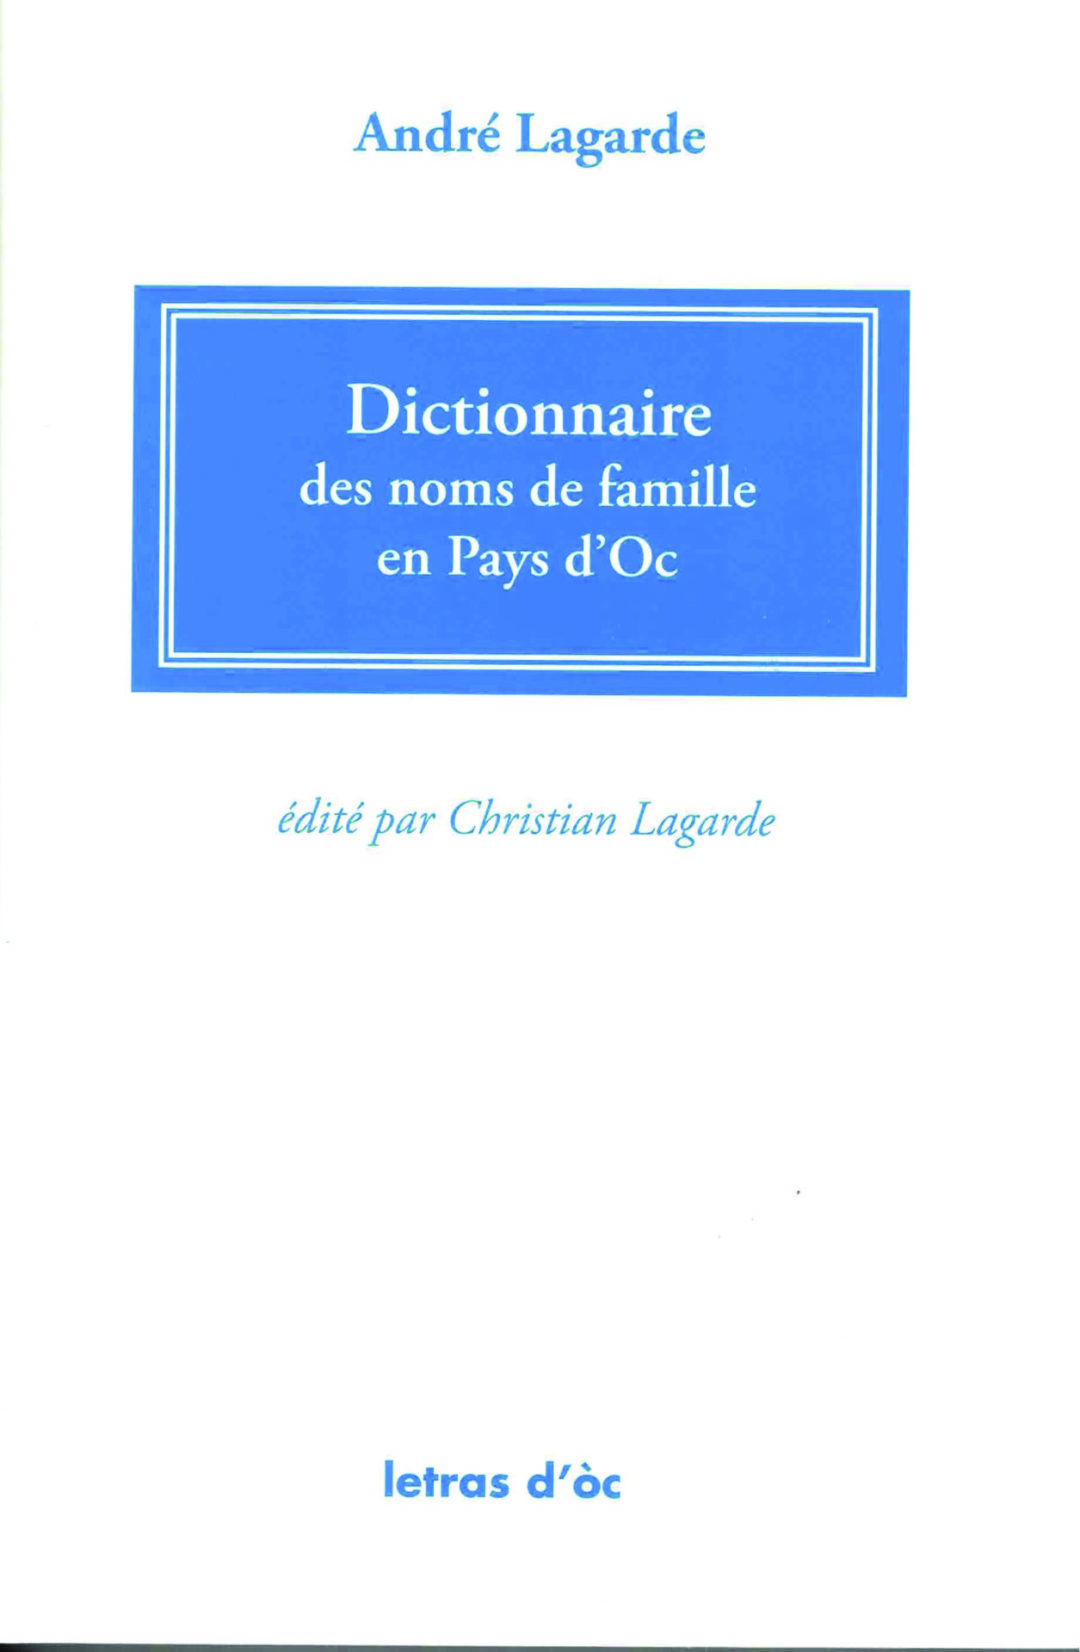 Dictionnaire des noms de famille en Pays d’Oc